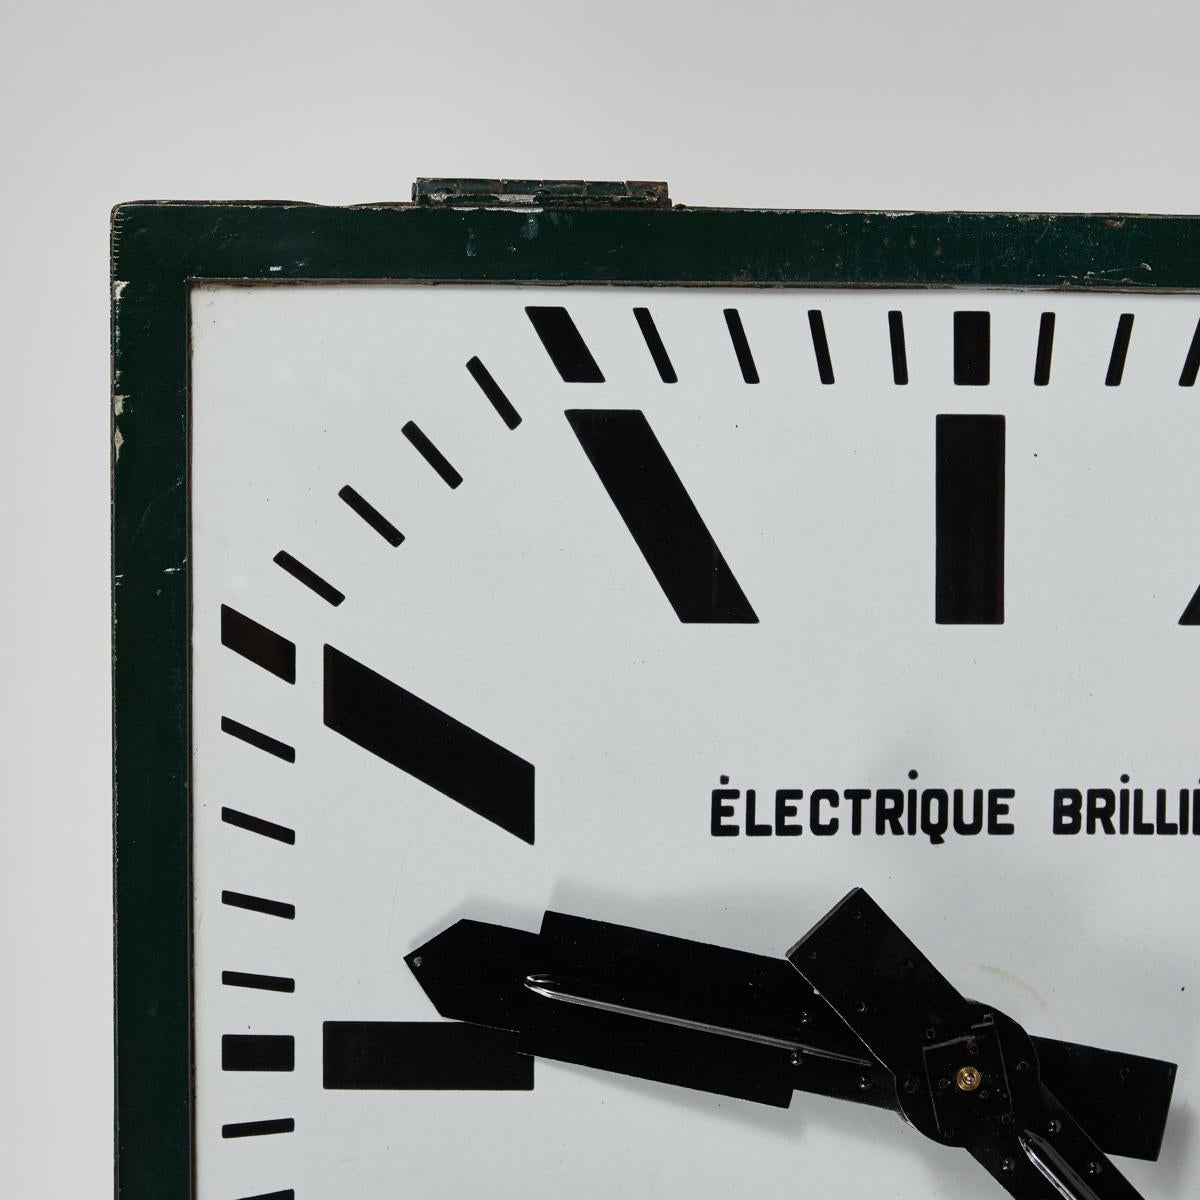 Dekorative französische Industrieuhr aus grünem Metall aus der Jahrhundertwende, hergestellt und entworfen von der bekannten Uhrenschmiede Électrique Brillé. Ausgestattet mit einem weiß-schwarz emaillierten Ziffernblatt mit grafischem Schriftzug.